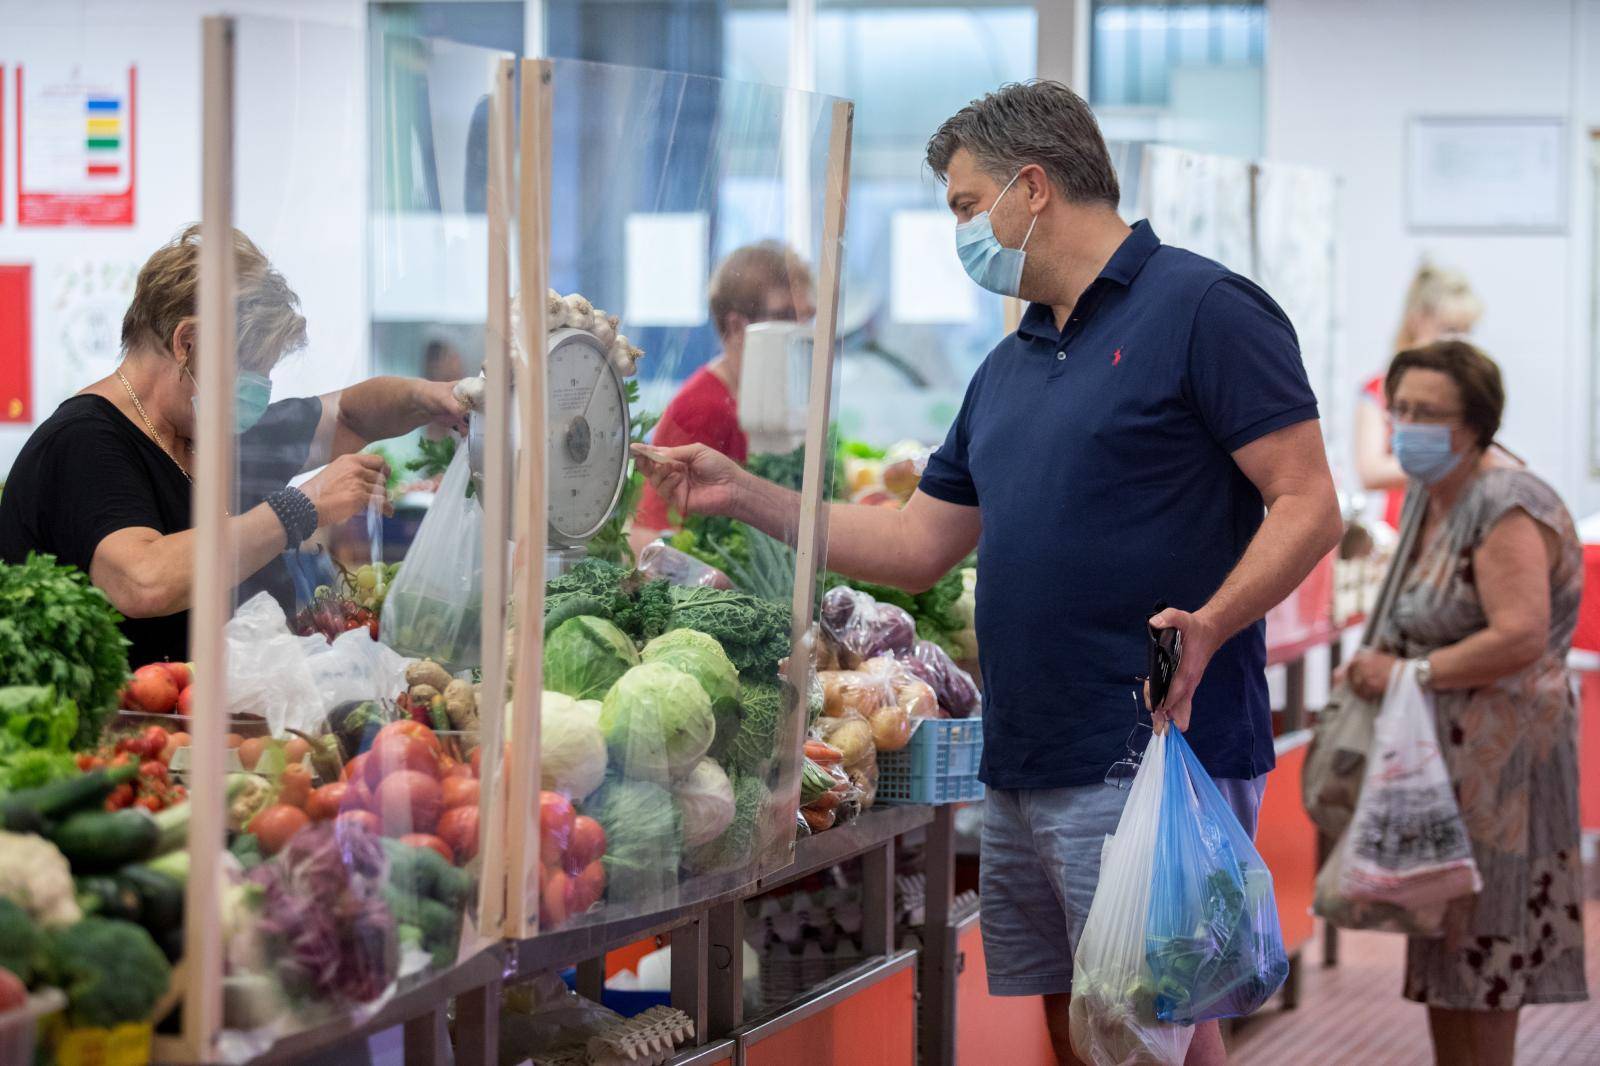 Premijer Plenković godišnji odmor provodi u Opatiji, u jutarnjim satima posjetio je tržnicu i ljekarnu